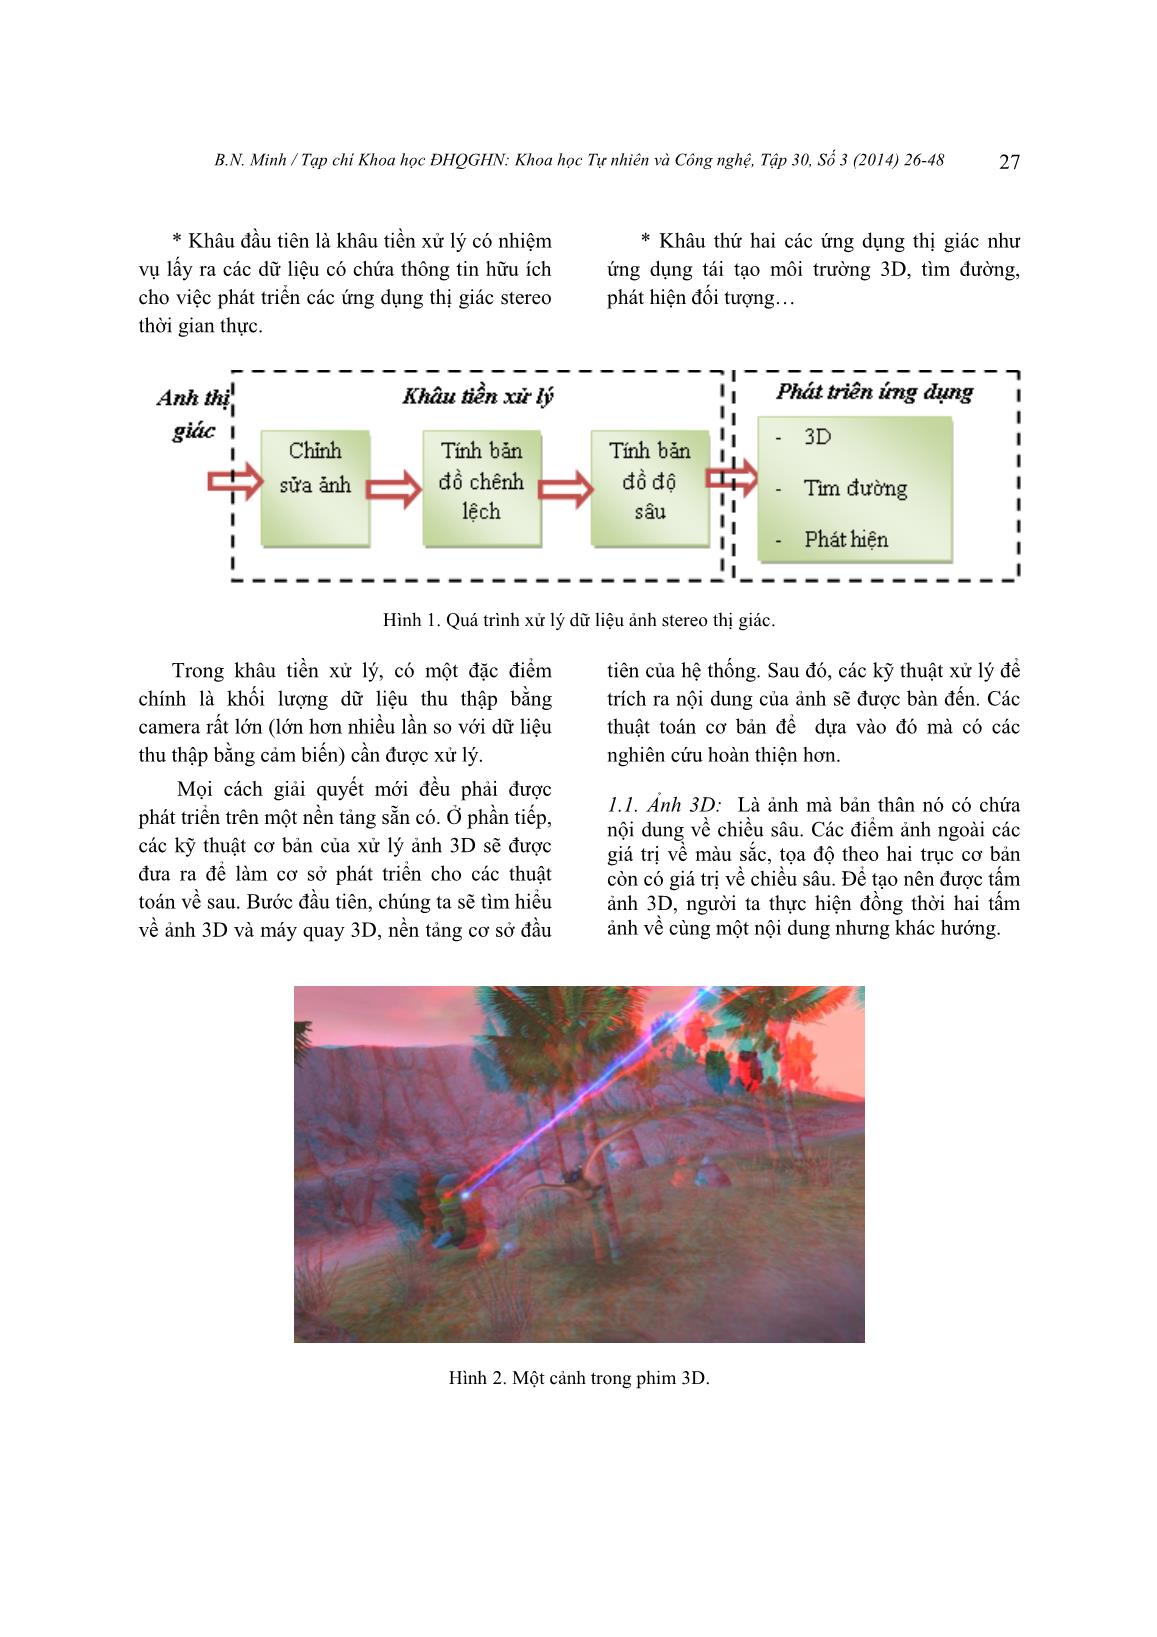 Nghiên cứu so sánh các thuật toán xử lý ảnh tính độ sâu ảnh stereo ứng dụng trong hệ thống camera thị giác trang 2